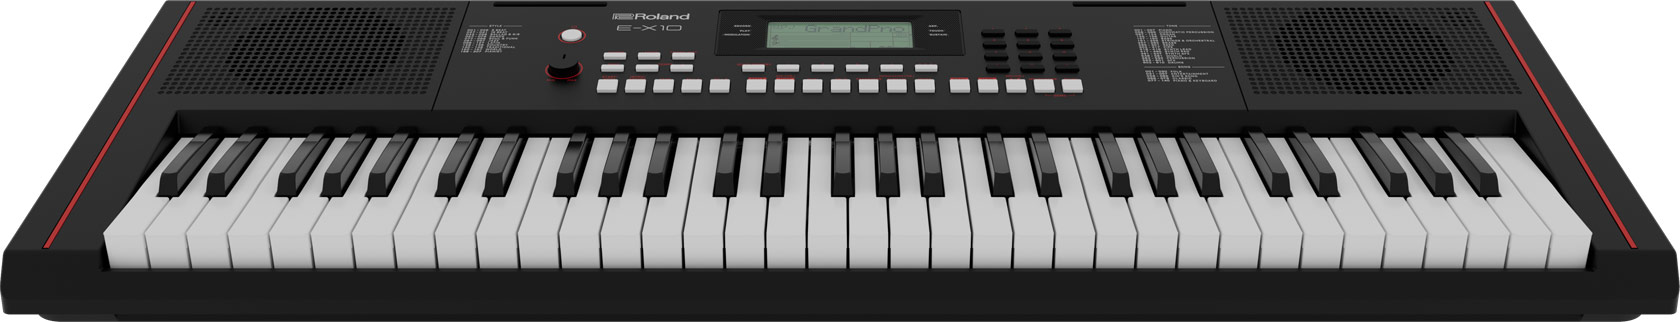 E-X10 Arranger Keyboard 61 Tasten